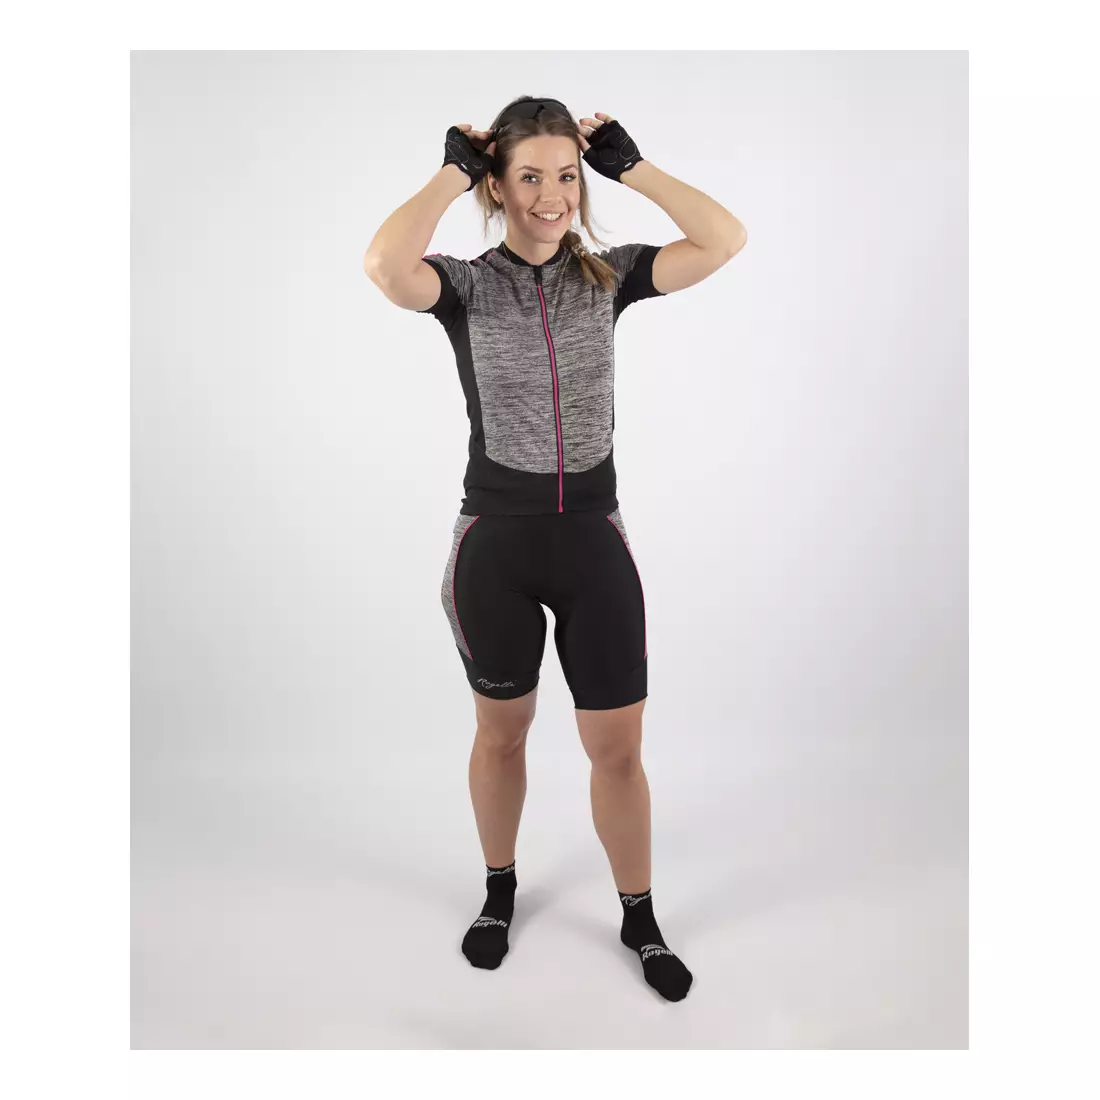 ROGELLI CAROU 3.0 női kerékpáros rövidnadrág fekete-szürke-rózsaszín 010.258